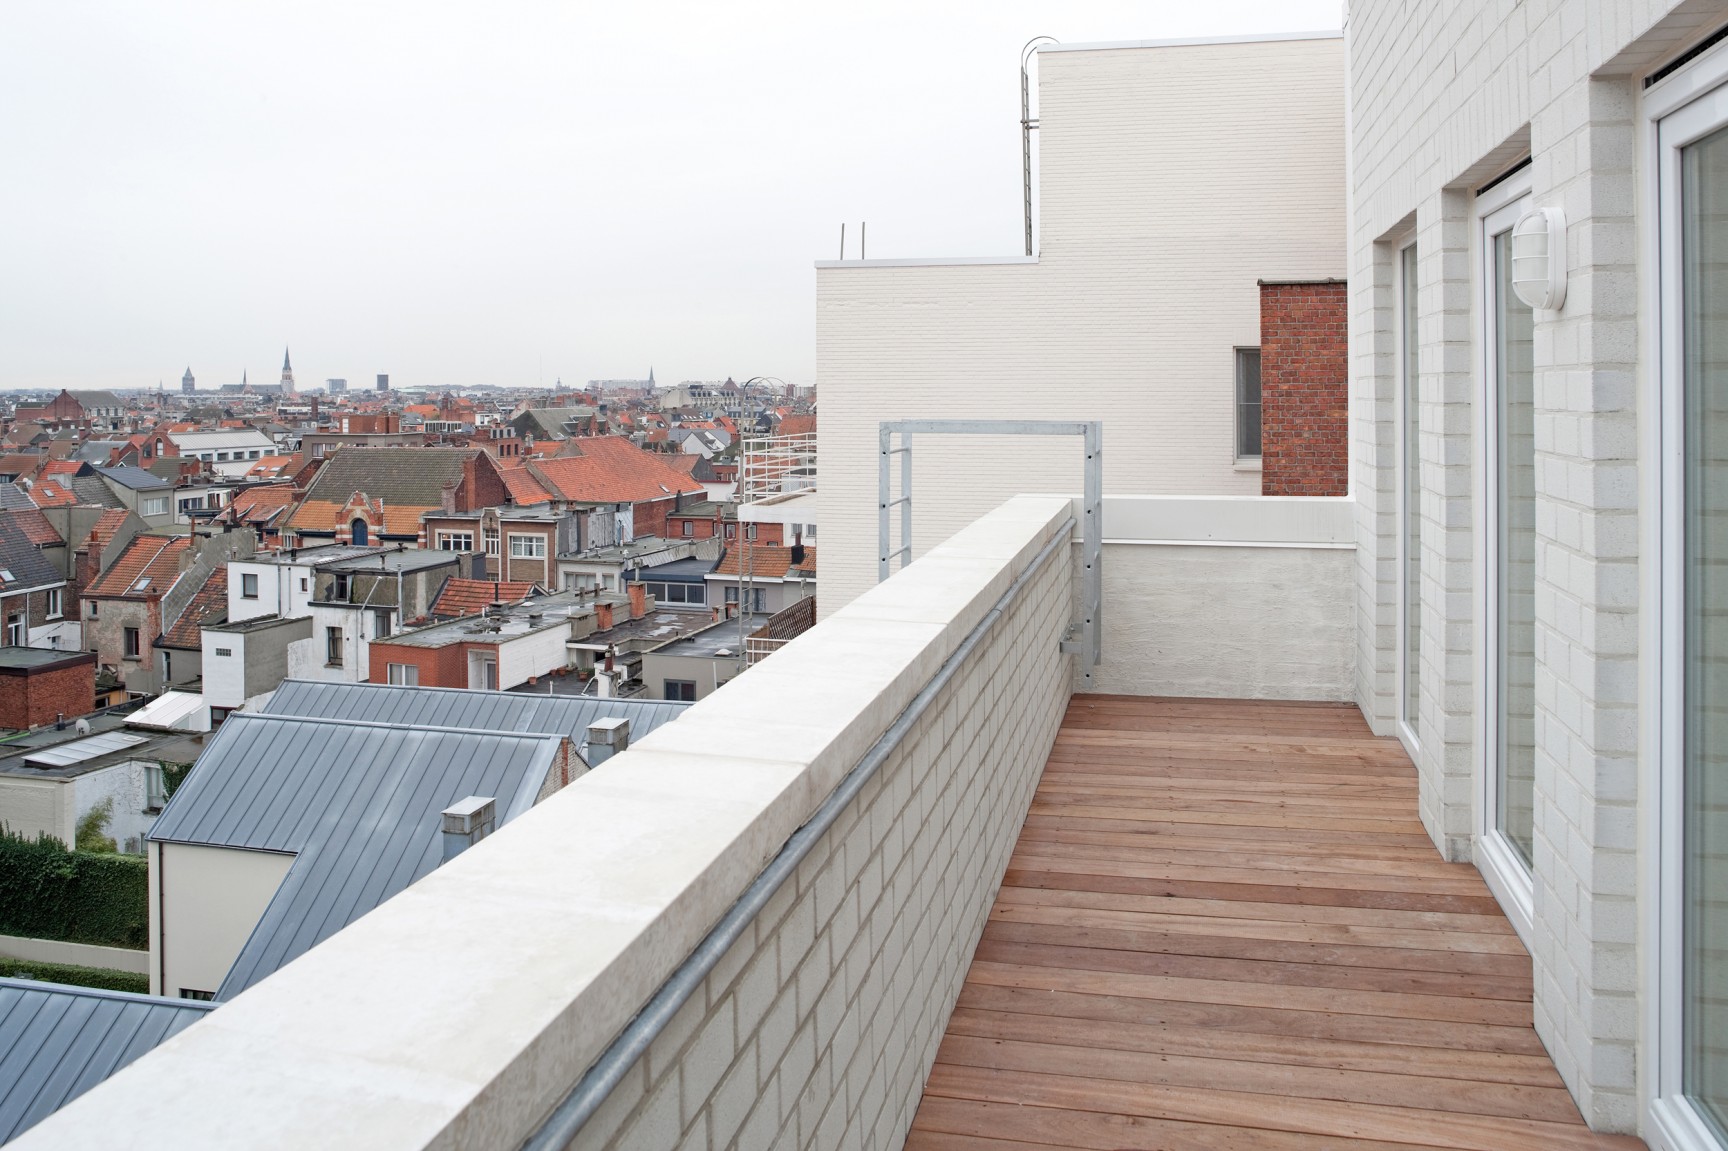 Italiëlei social housing Antwerp